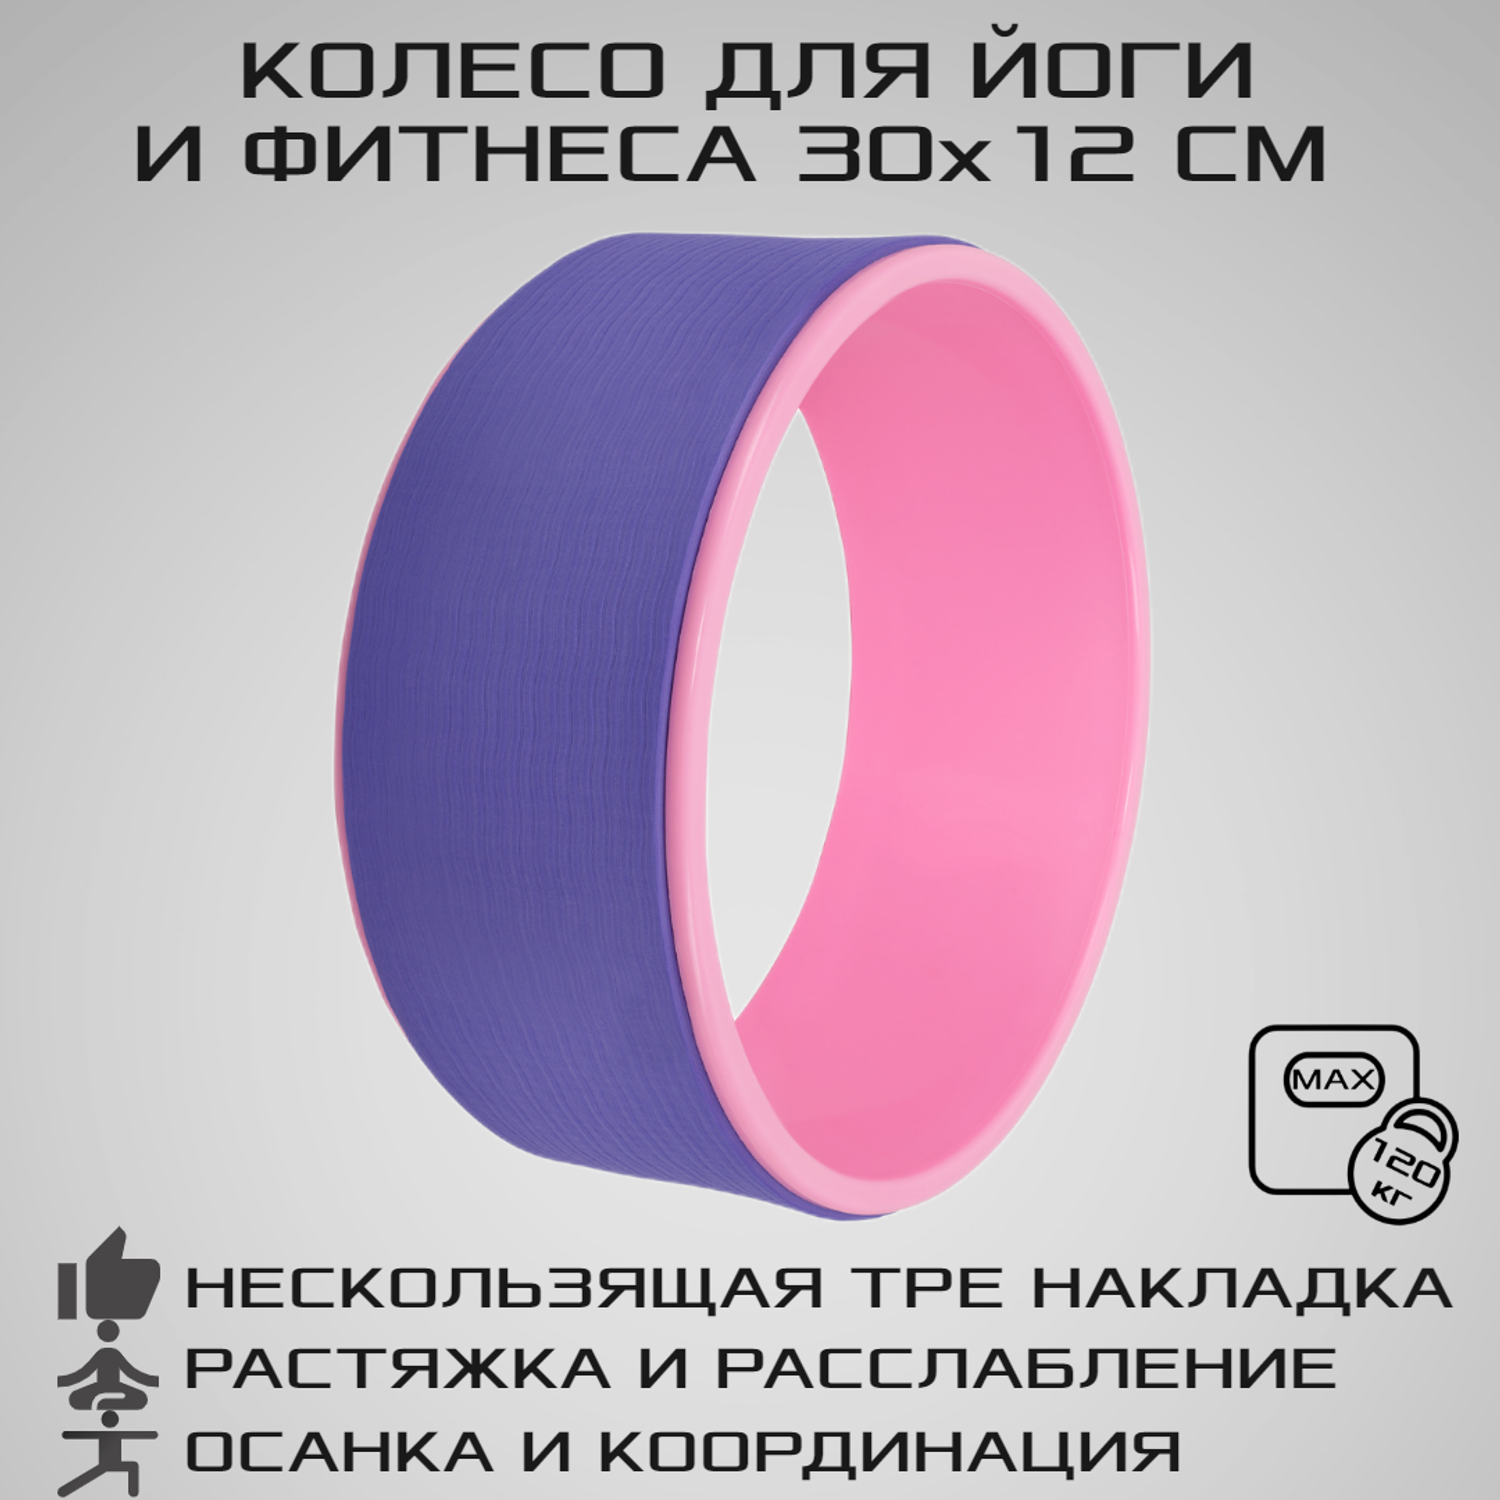 Колесо для йоги STRONG BODY фитнеса и пилатес 30 см х 12 см фиолетово-розовое - фото 1